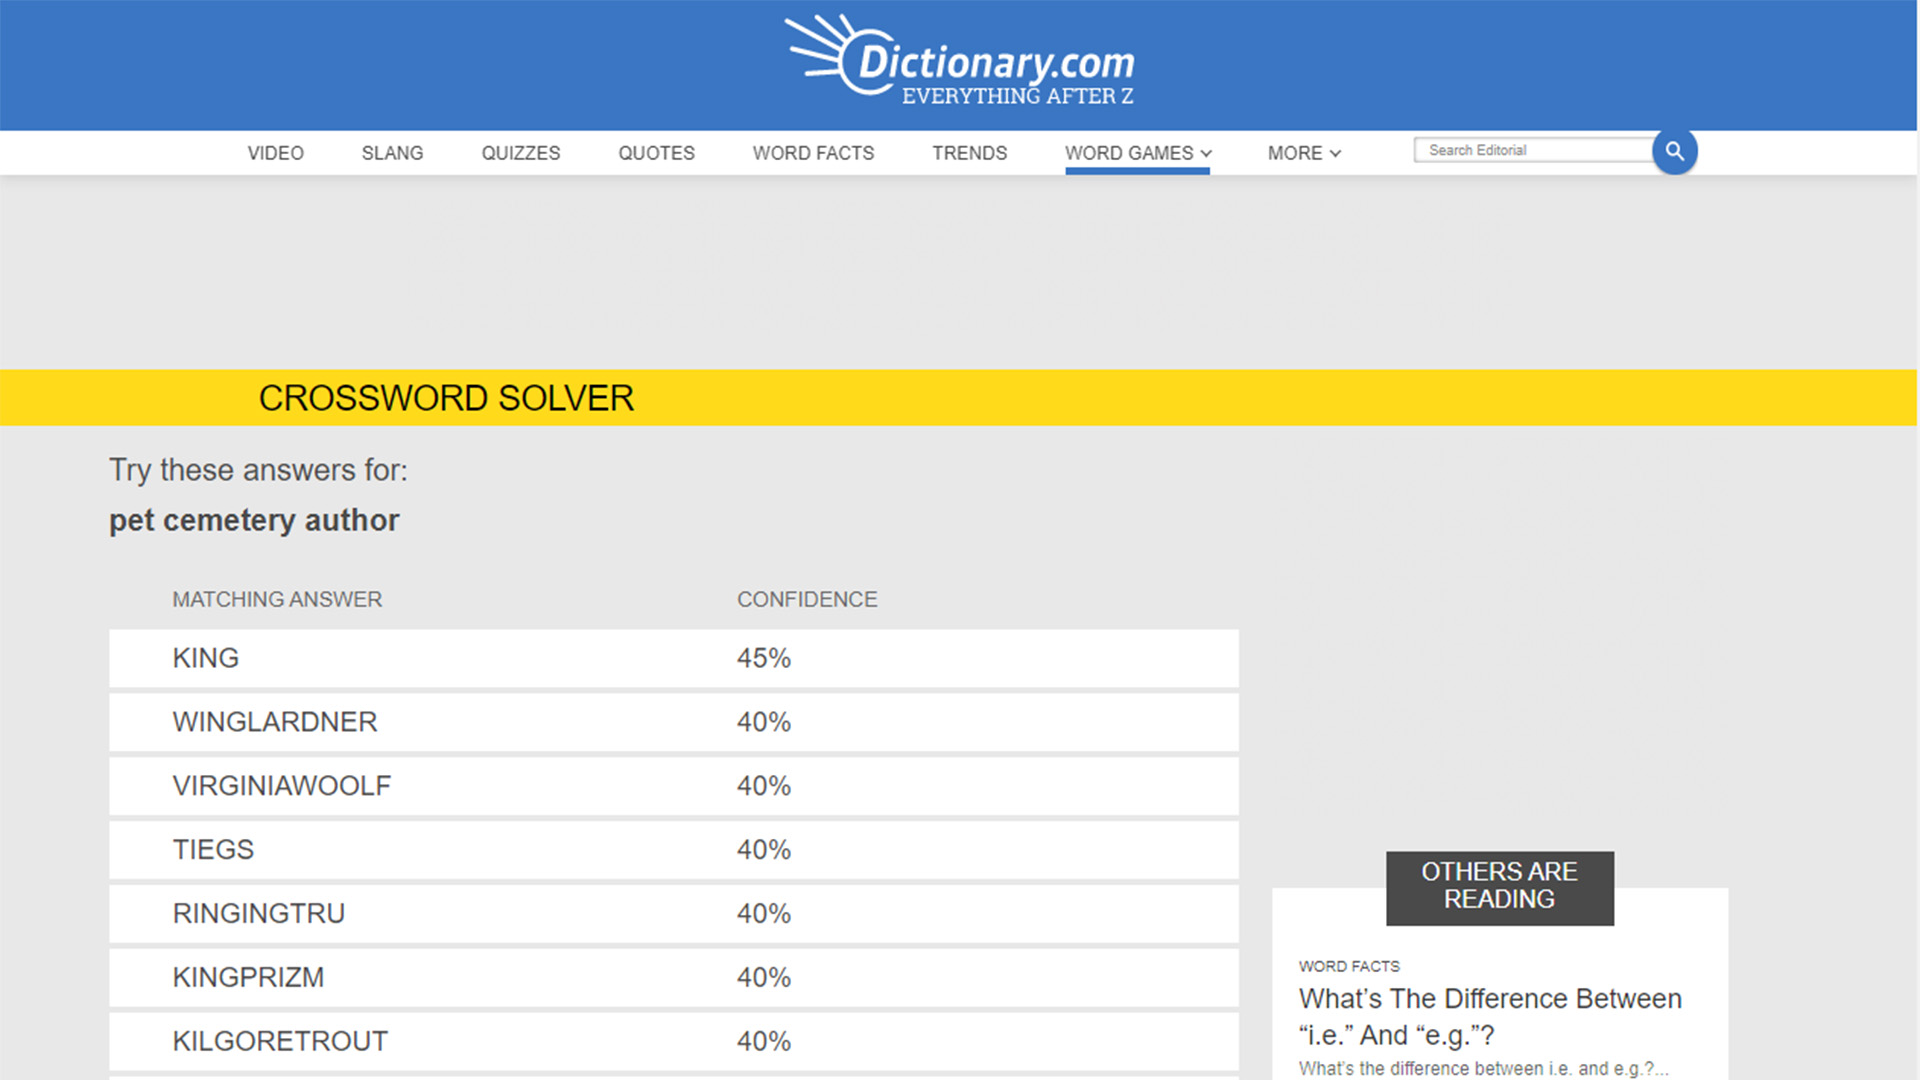 Dictionarydotcom website screenshot for crossword solvers